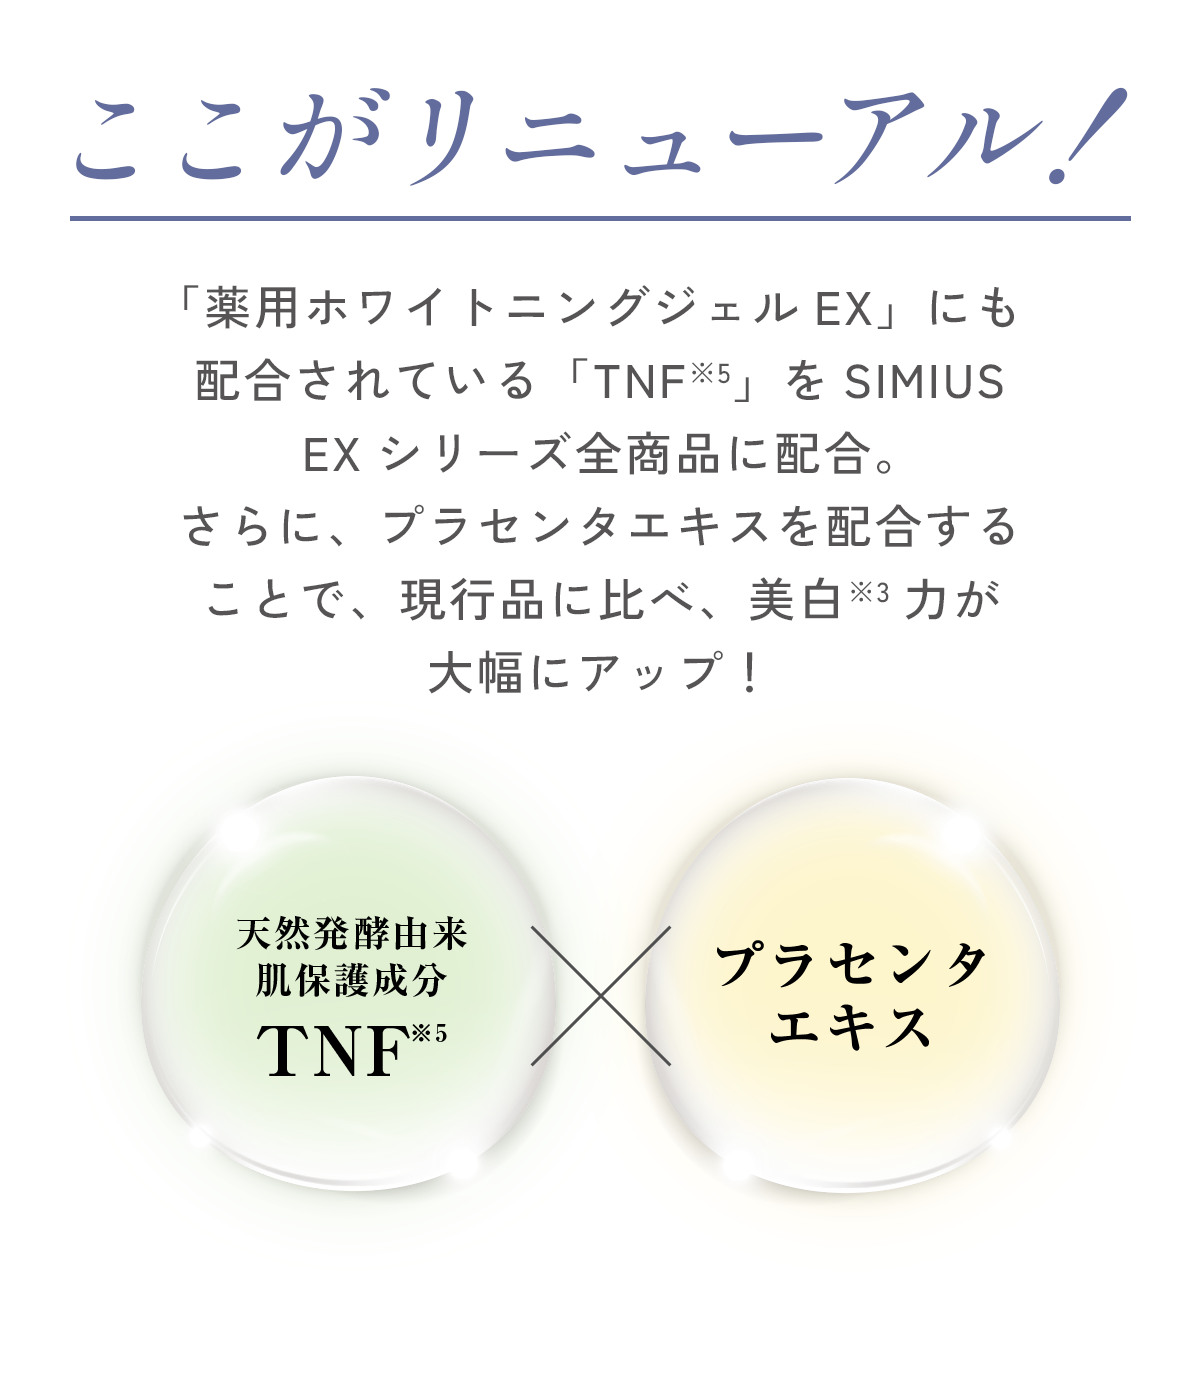 ここがリニューアル！シミ悩みゼロ肌※4へ導くために新たに配合した美白※3成分「天然発酵由来肌保護成分TNF※5×プラセンタエキス」